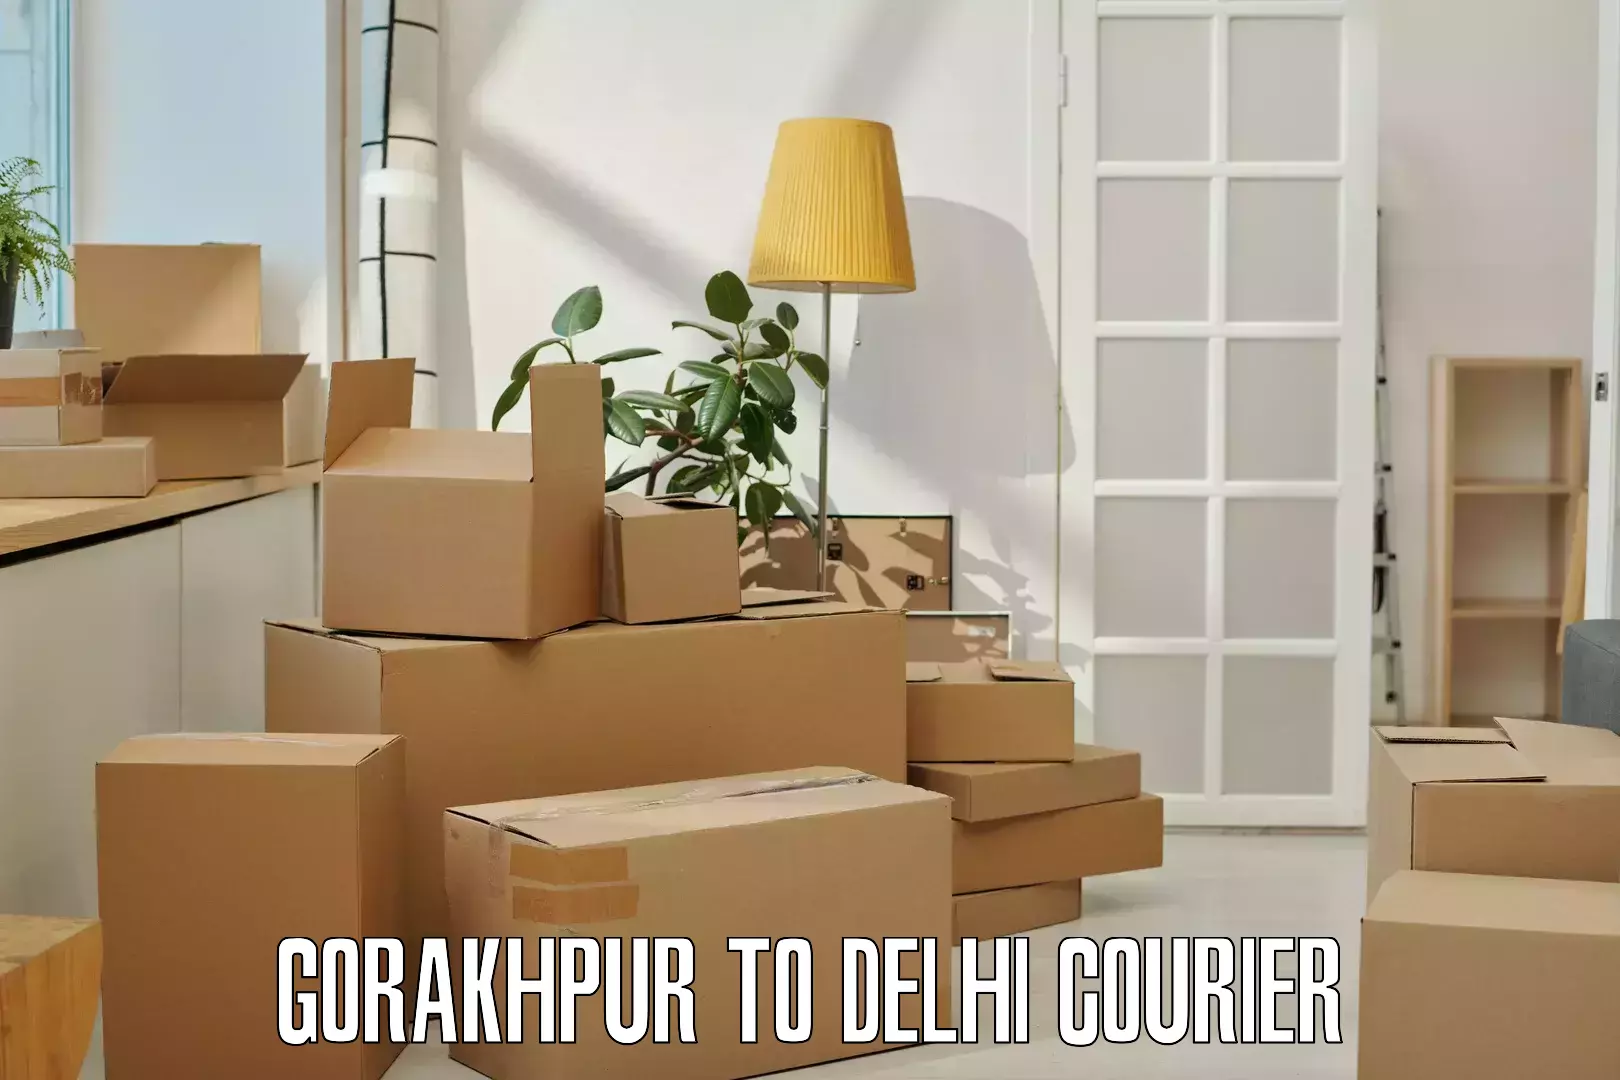 Express mail solutions Gorakhpur to Delhi